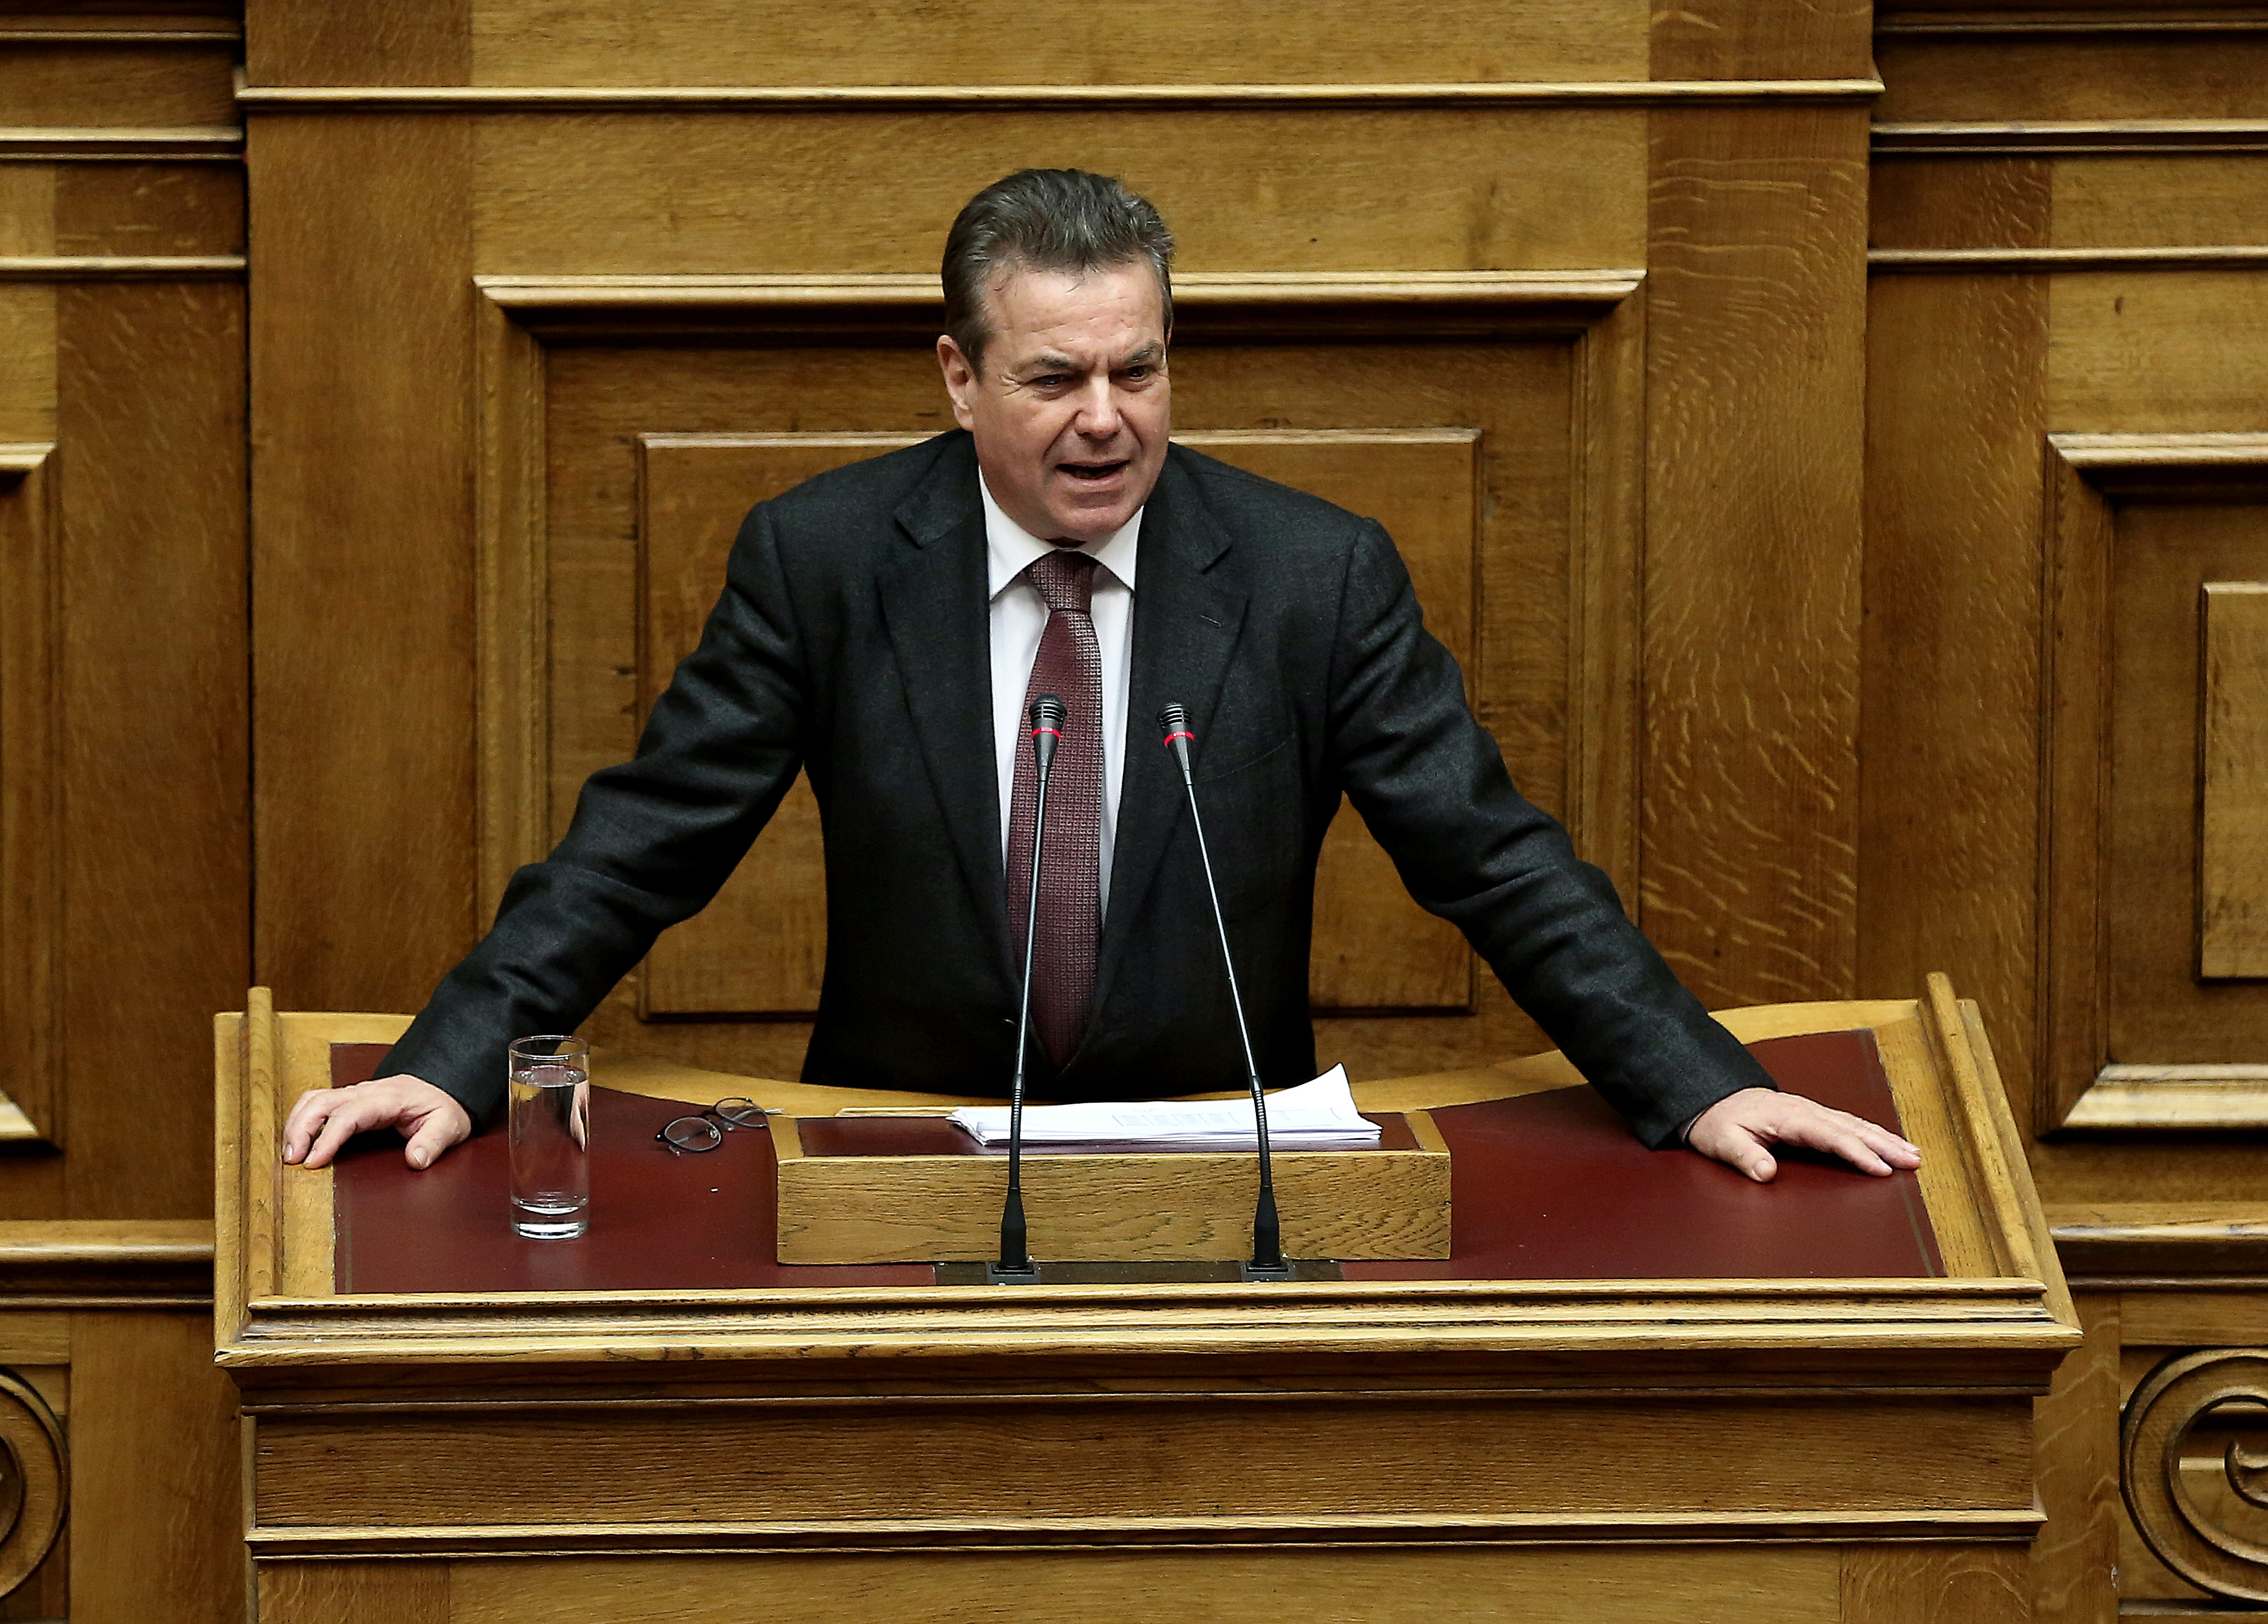 Πετρόπουλος: Μισθωτός που έχει και μπλοκάκι δεν πληρώνει αν δεν έχει έσοδα από αυτό